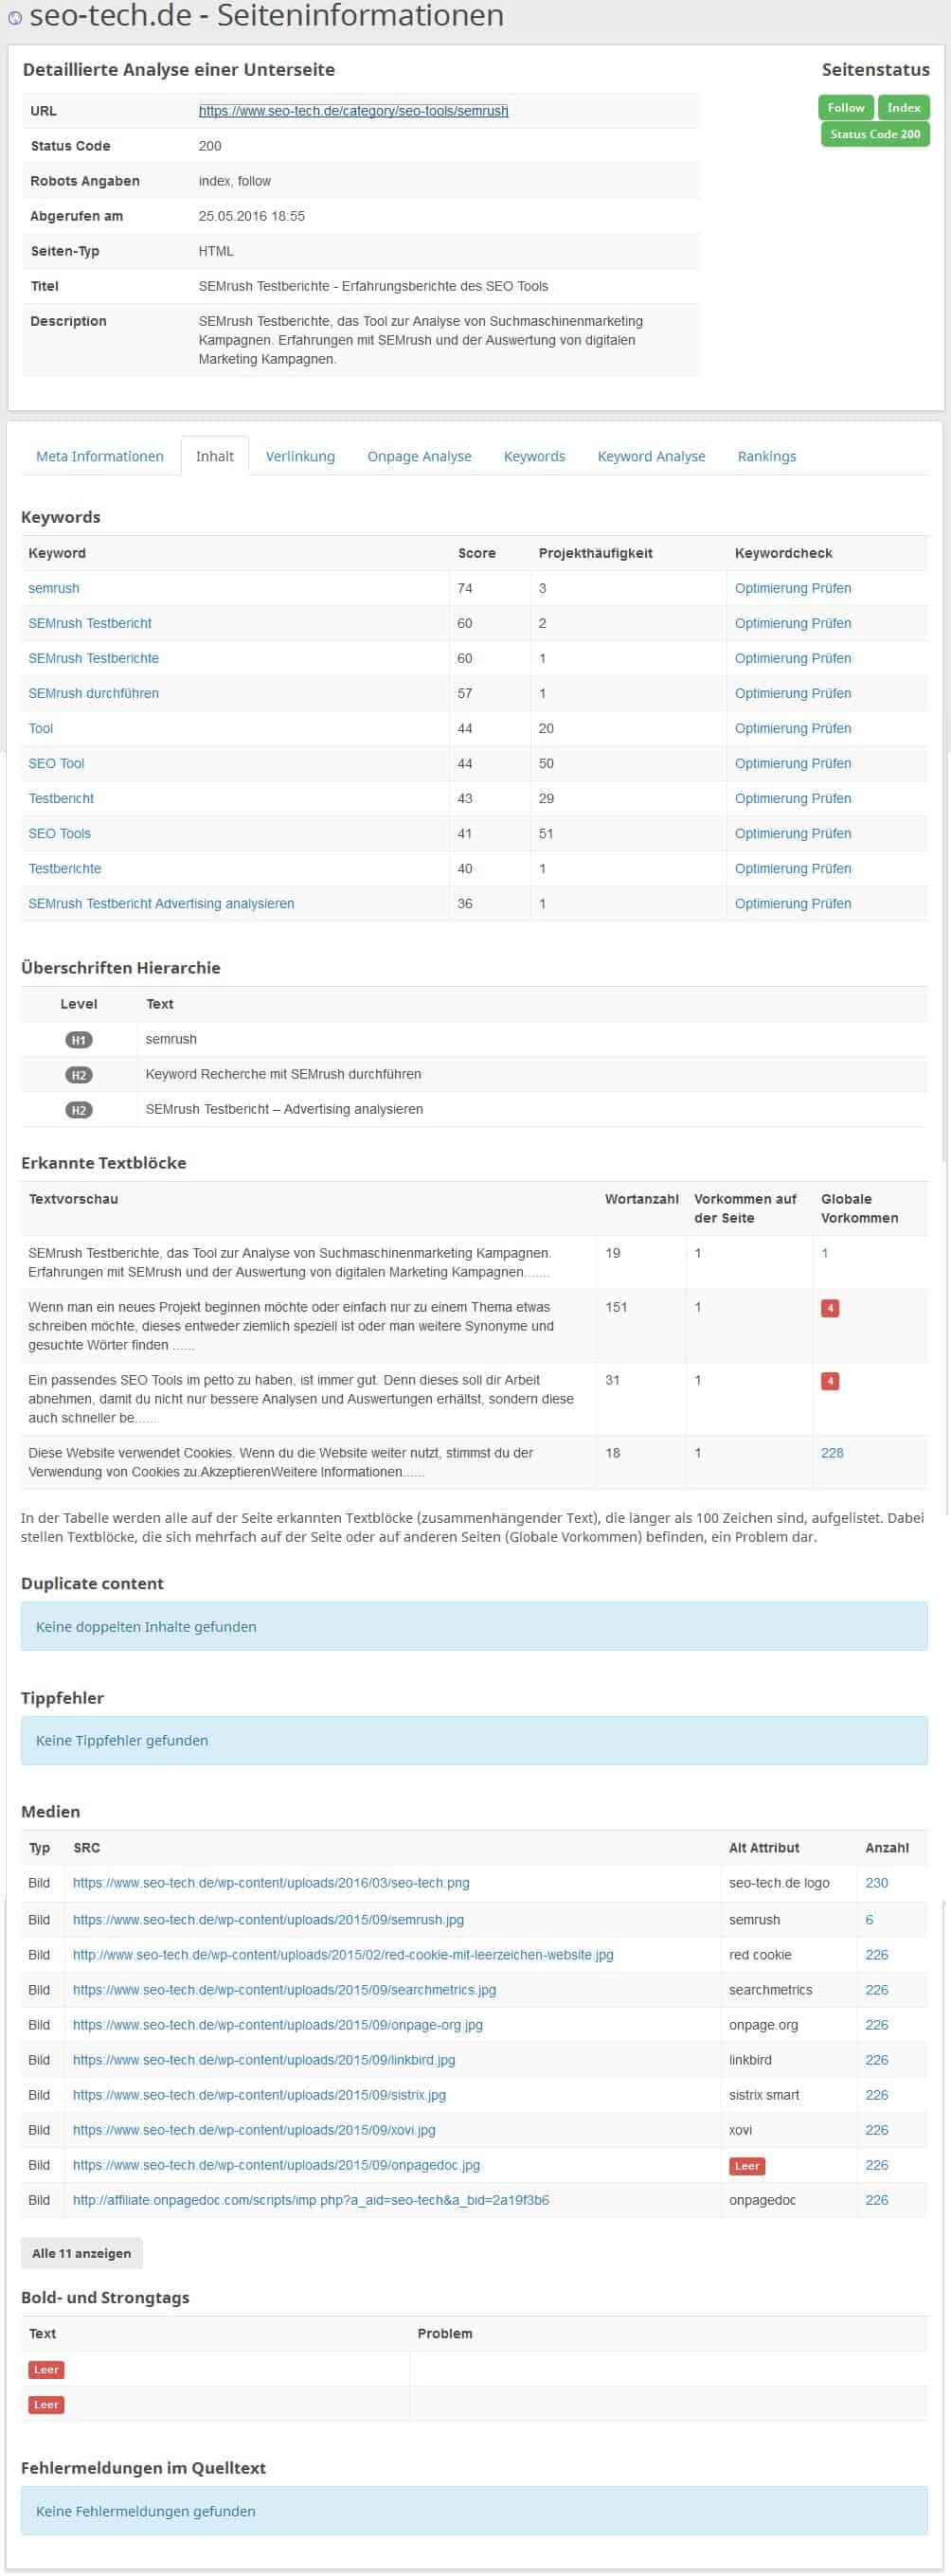 seobility Seiteninformationen Inhalt und keywords by seo-tech.de 